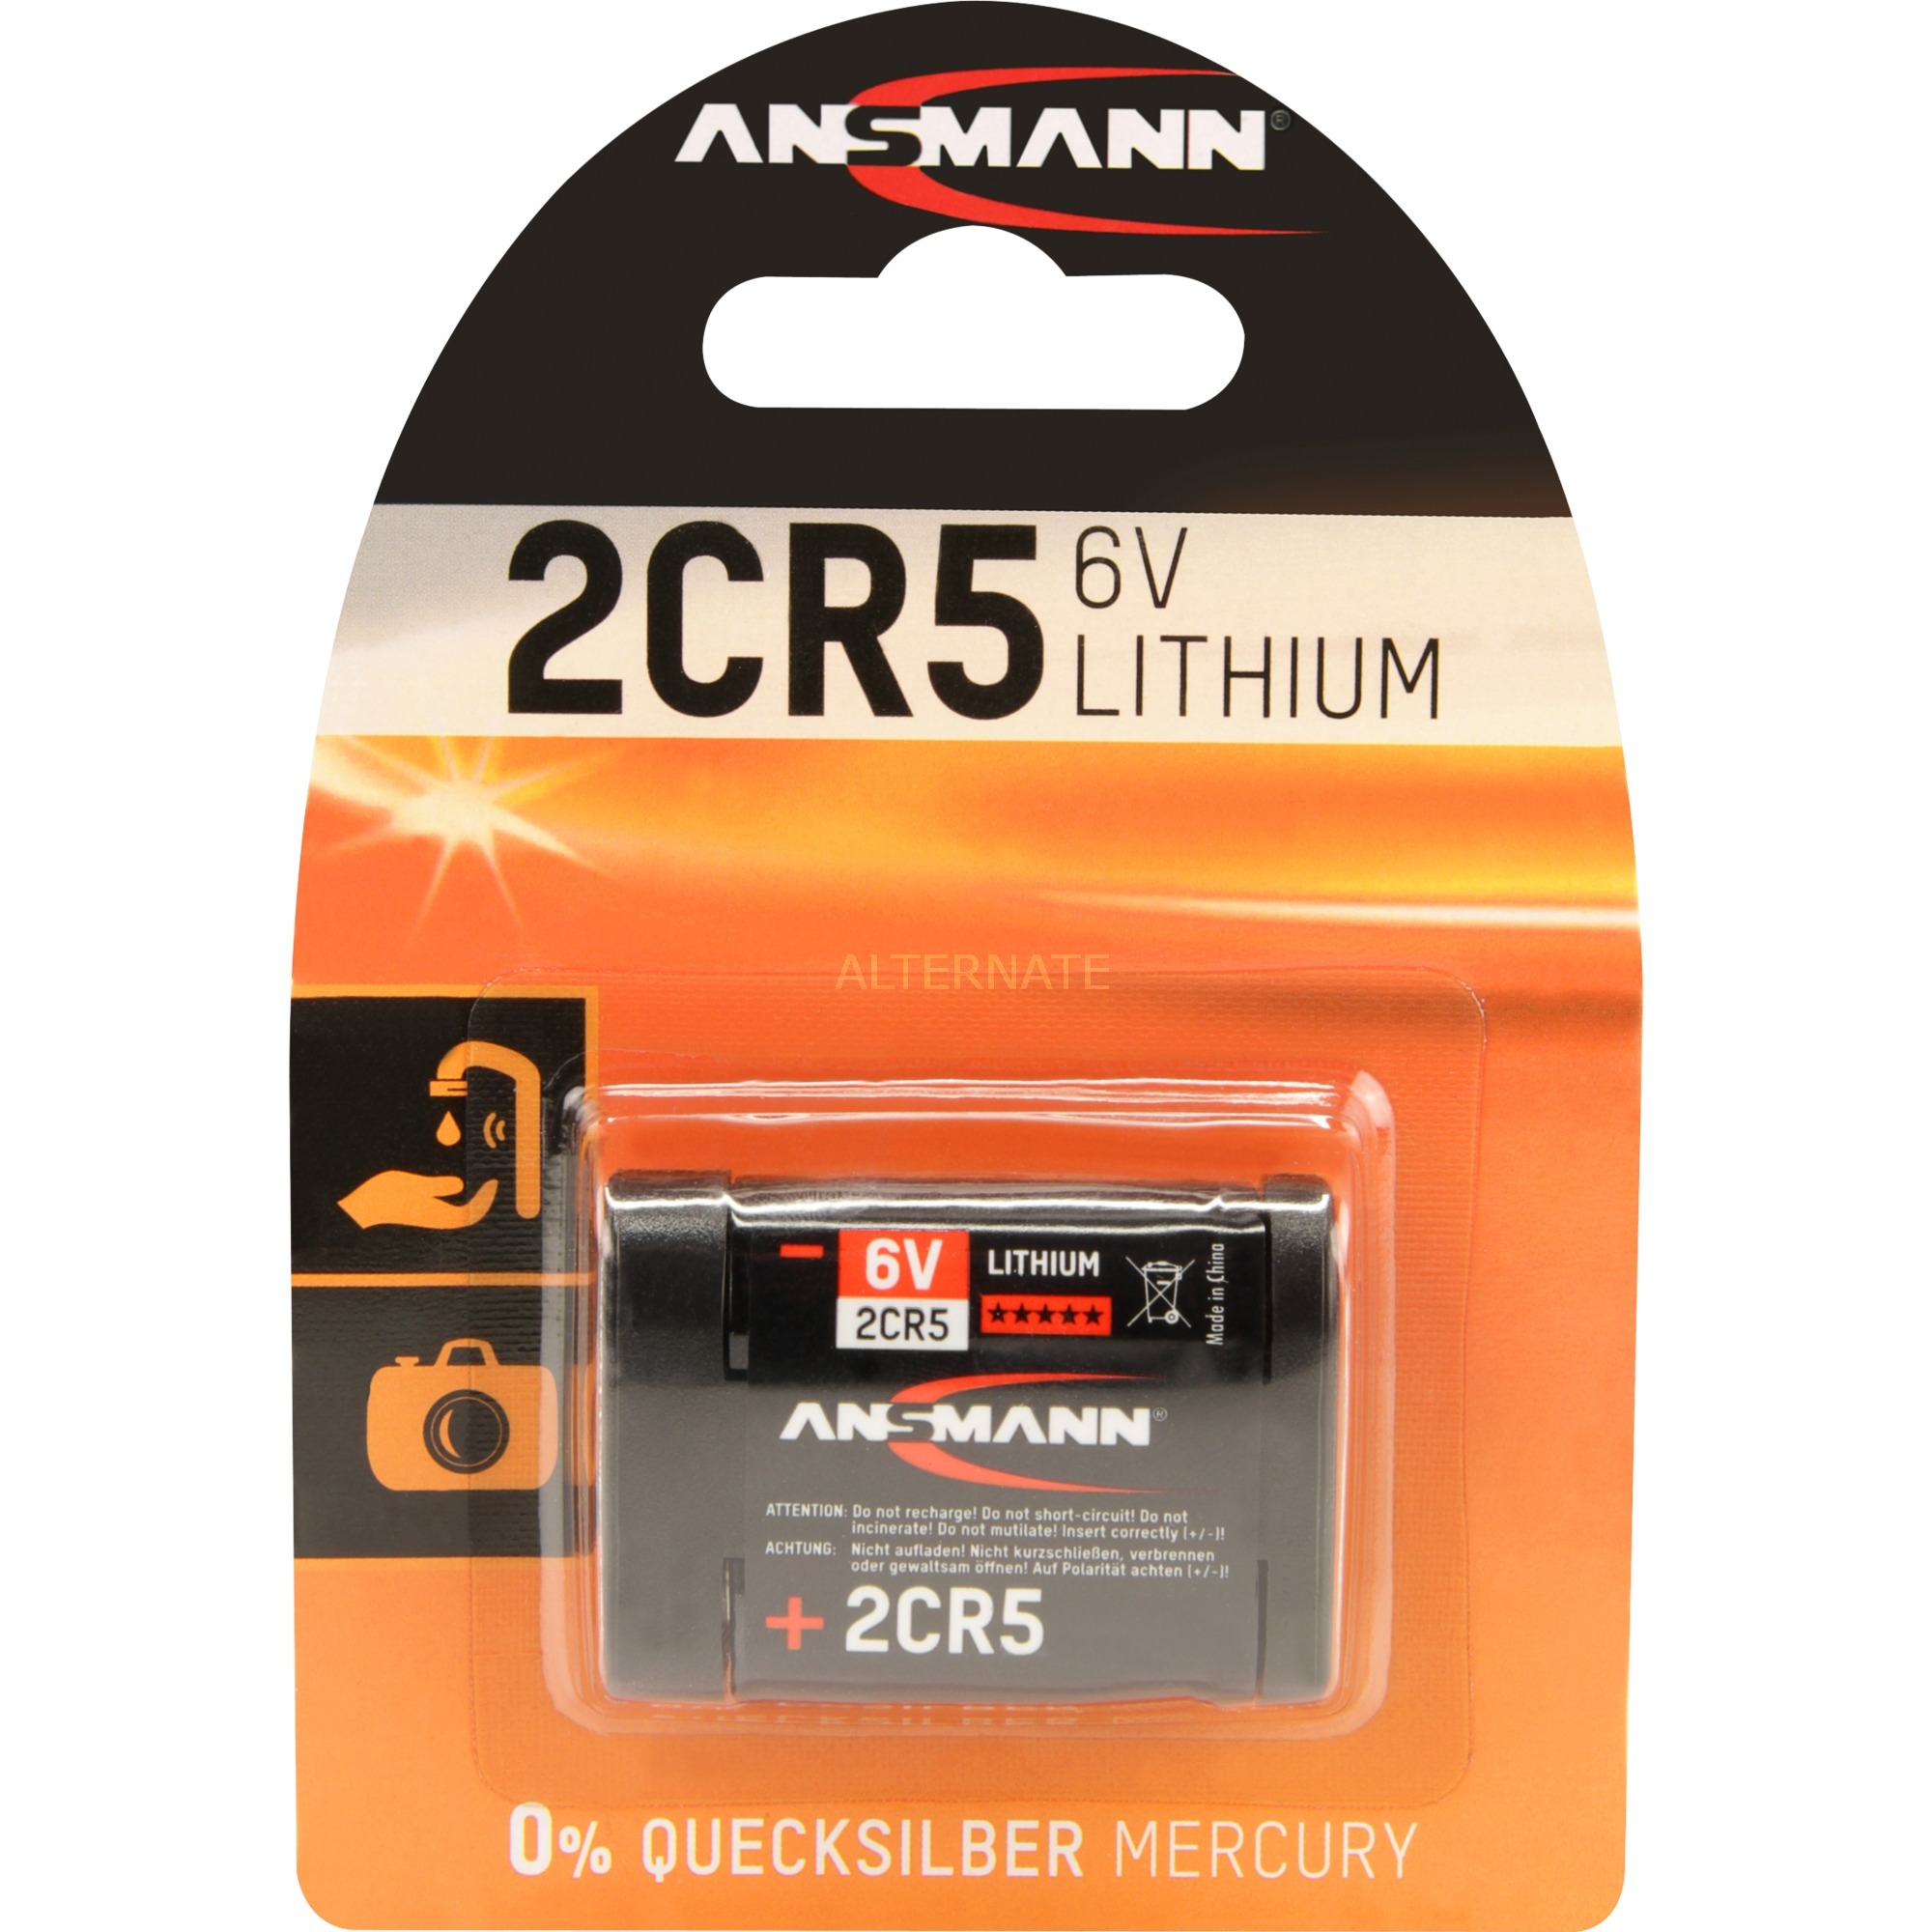 Image of Alternate - Lithium Batterie 2CR5 online einkaufen bei Alternate